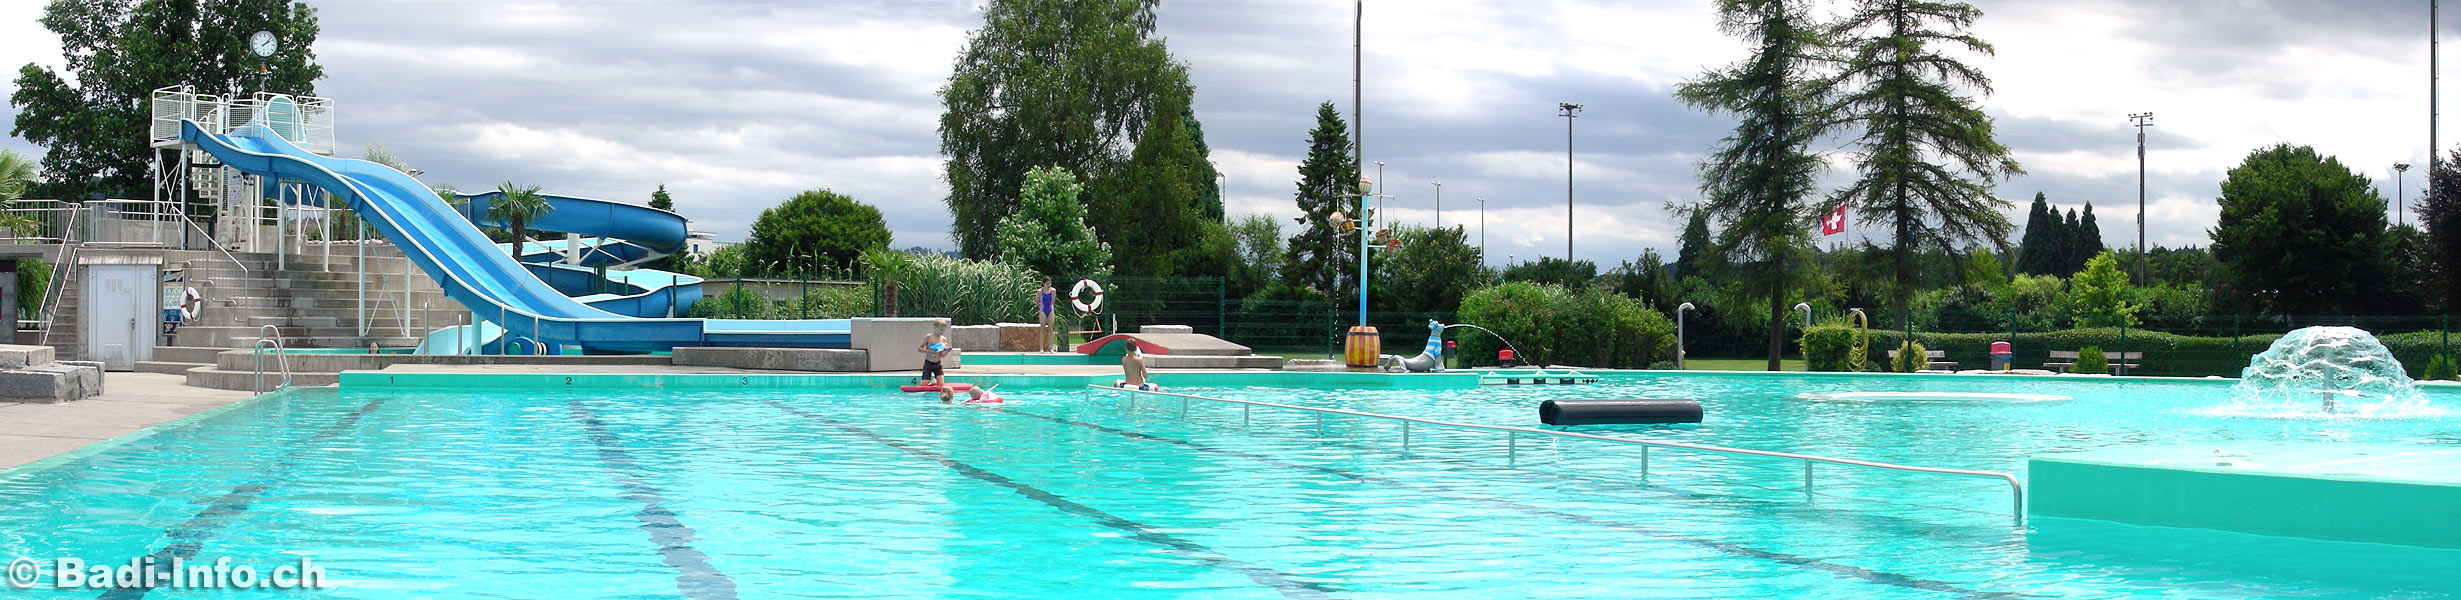 Schwimmbad Zofingen Kanton Aargau